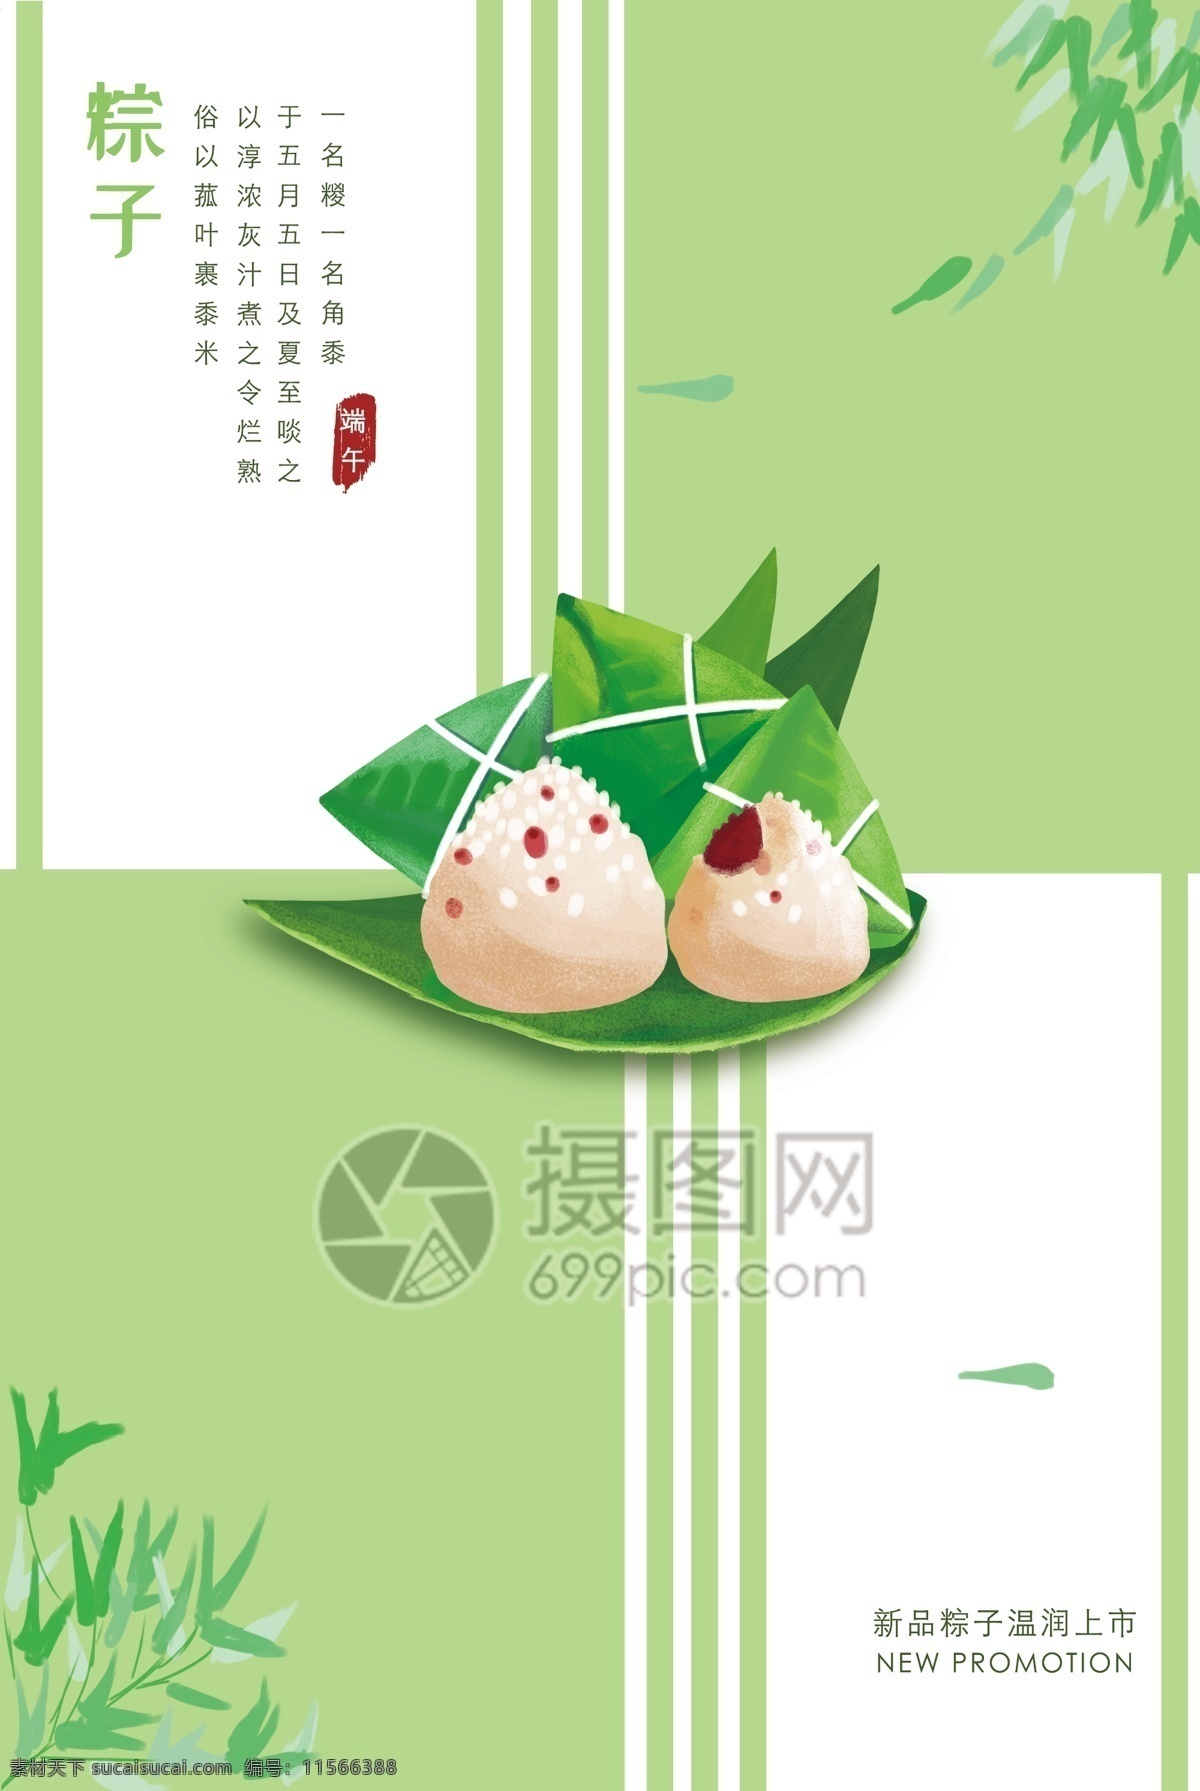 粽子美食海报 粽子 端午节 美食 食物 淡青色 简约 清新 文艺 极简 绿色 海报